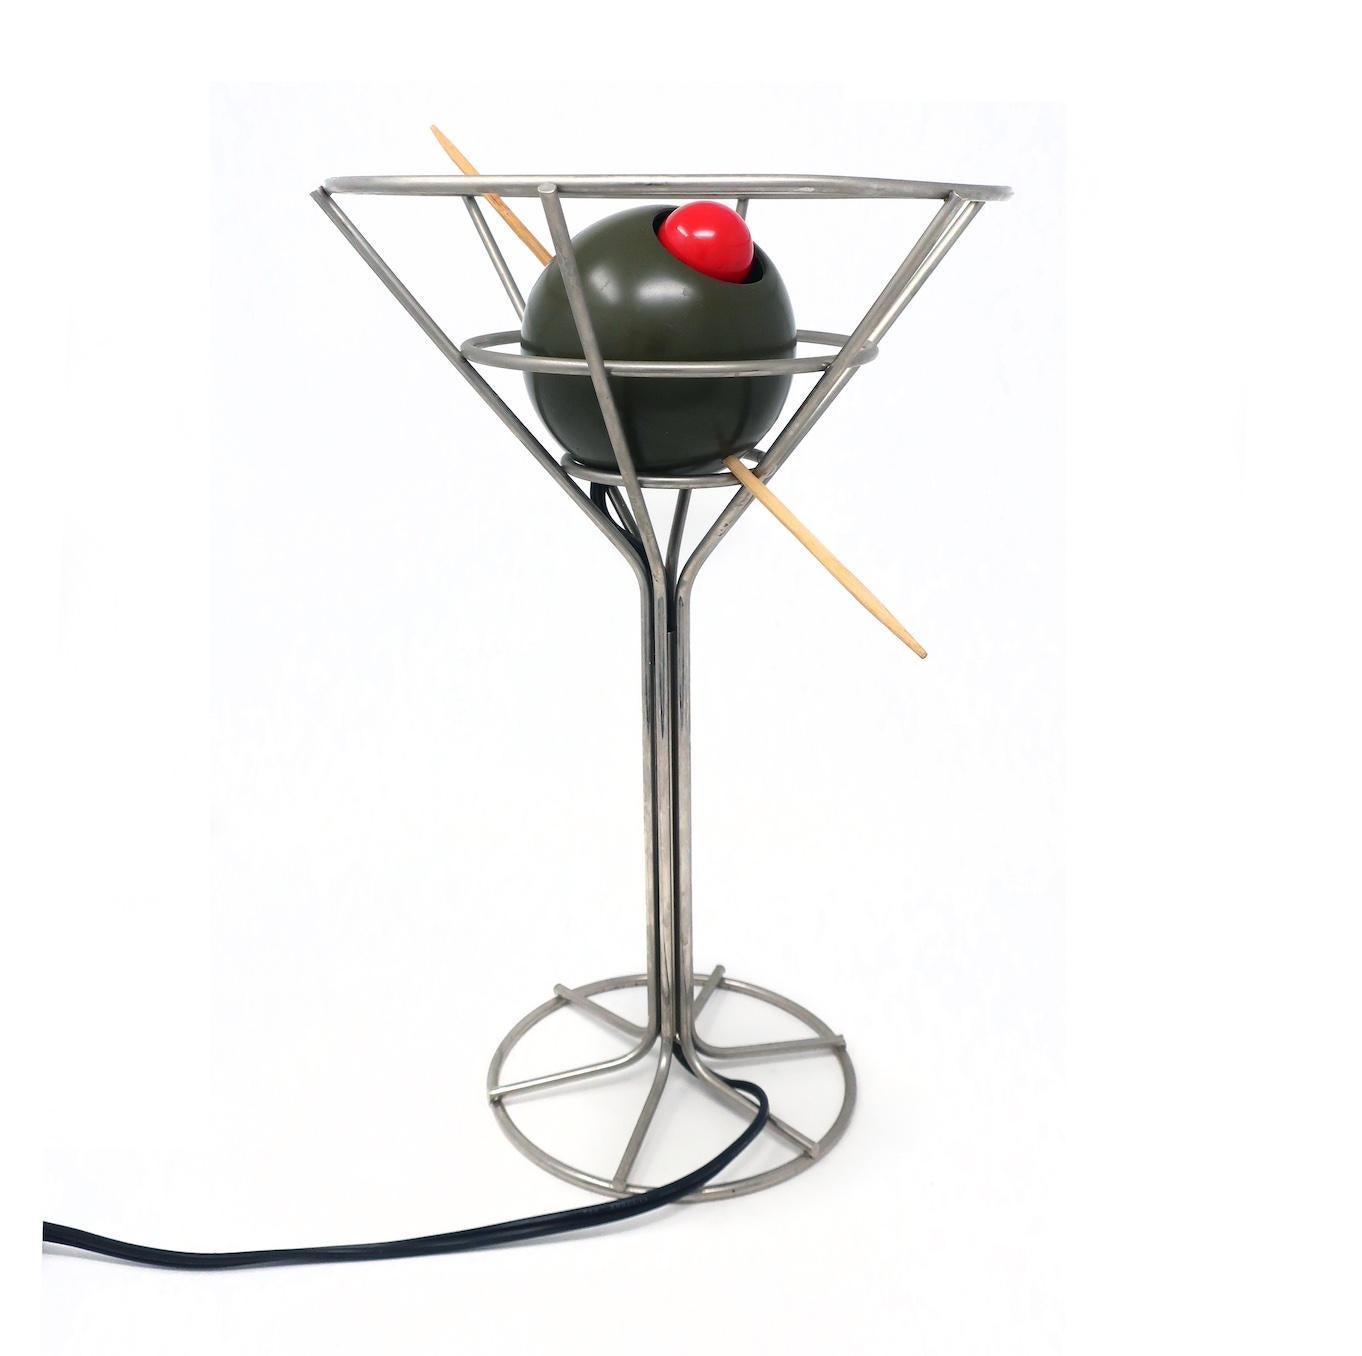 Rare lampe martini postmoderne de 1993 conçue par David Krys. Un fil métallique forme la forme du verre avec une olive verte embrochée, farcie d'une ampoule rouge déguisée en piment. Idéal pour les amateurs de pop art, d'articles de bar, de martinis